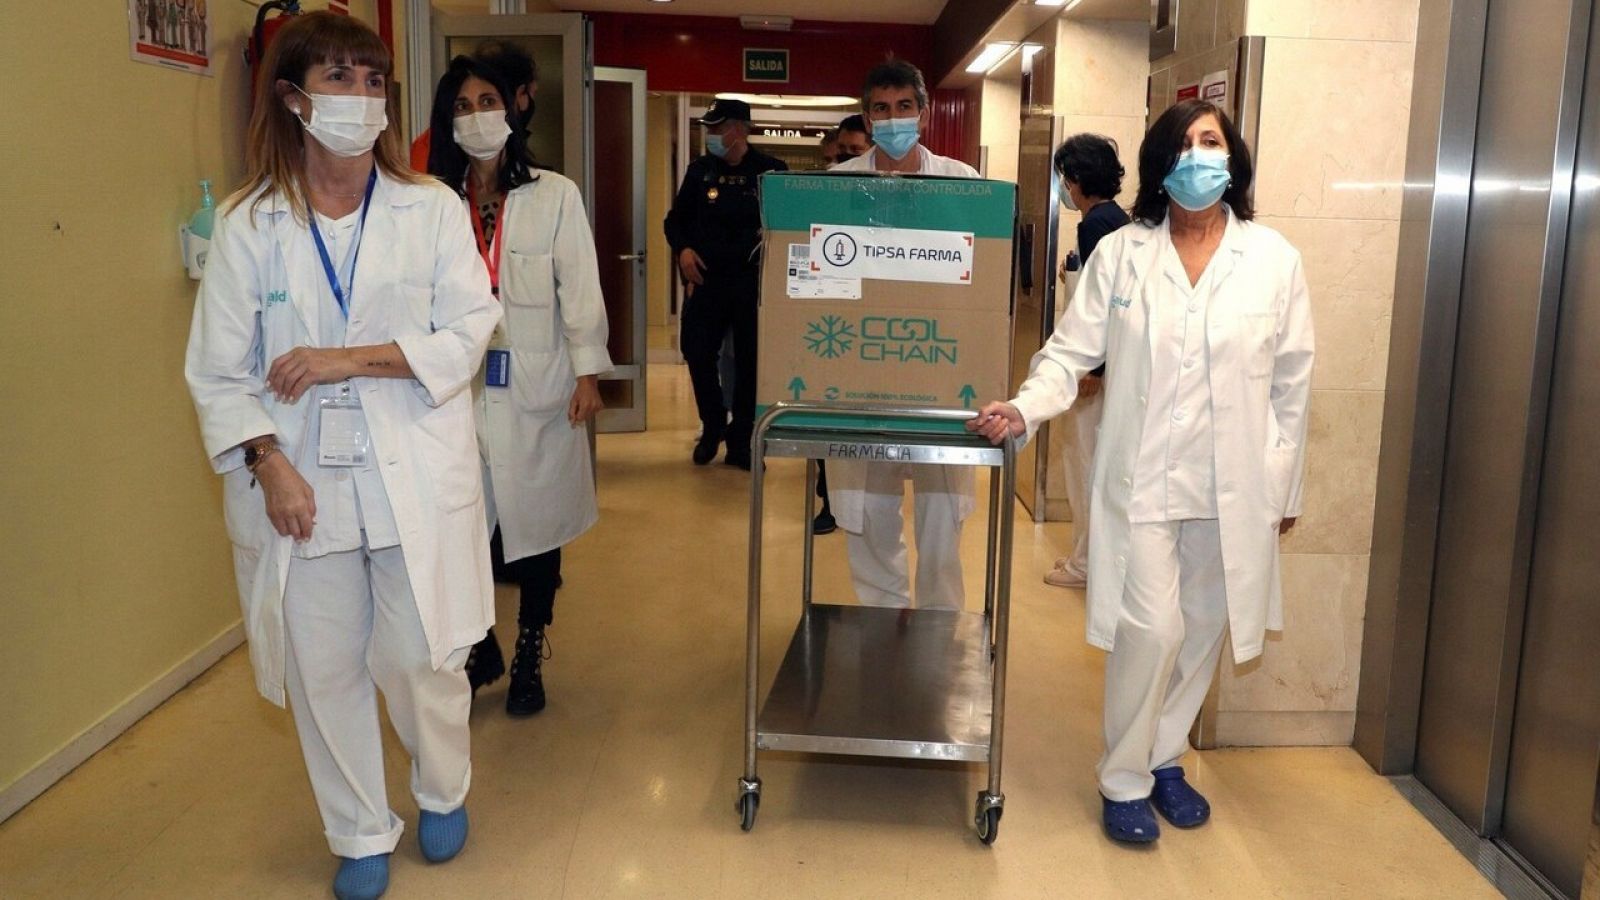 Varios sanitarios transportan las primeras dosis que se distribuyen de la vacuna de Moderna contra la COVID-19 en el Hospital Clínico de Zaragoza el 13 de enero. EFE/Javier Cebollada